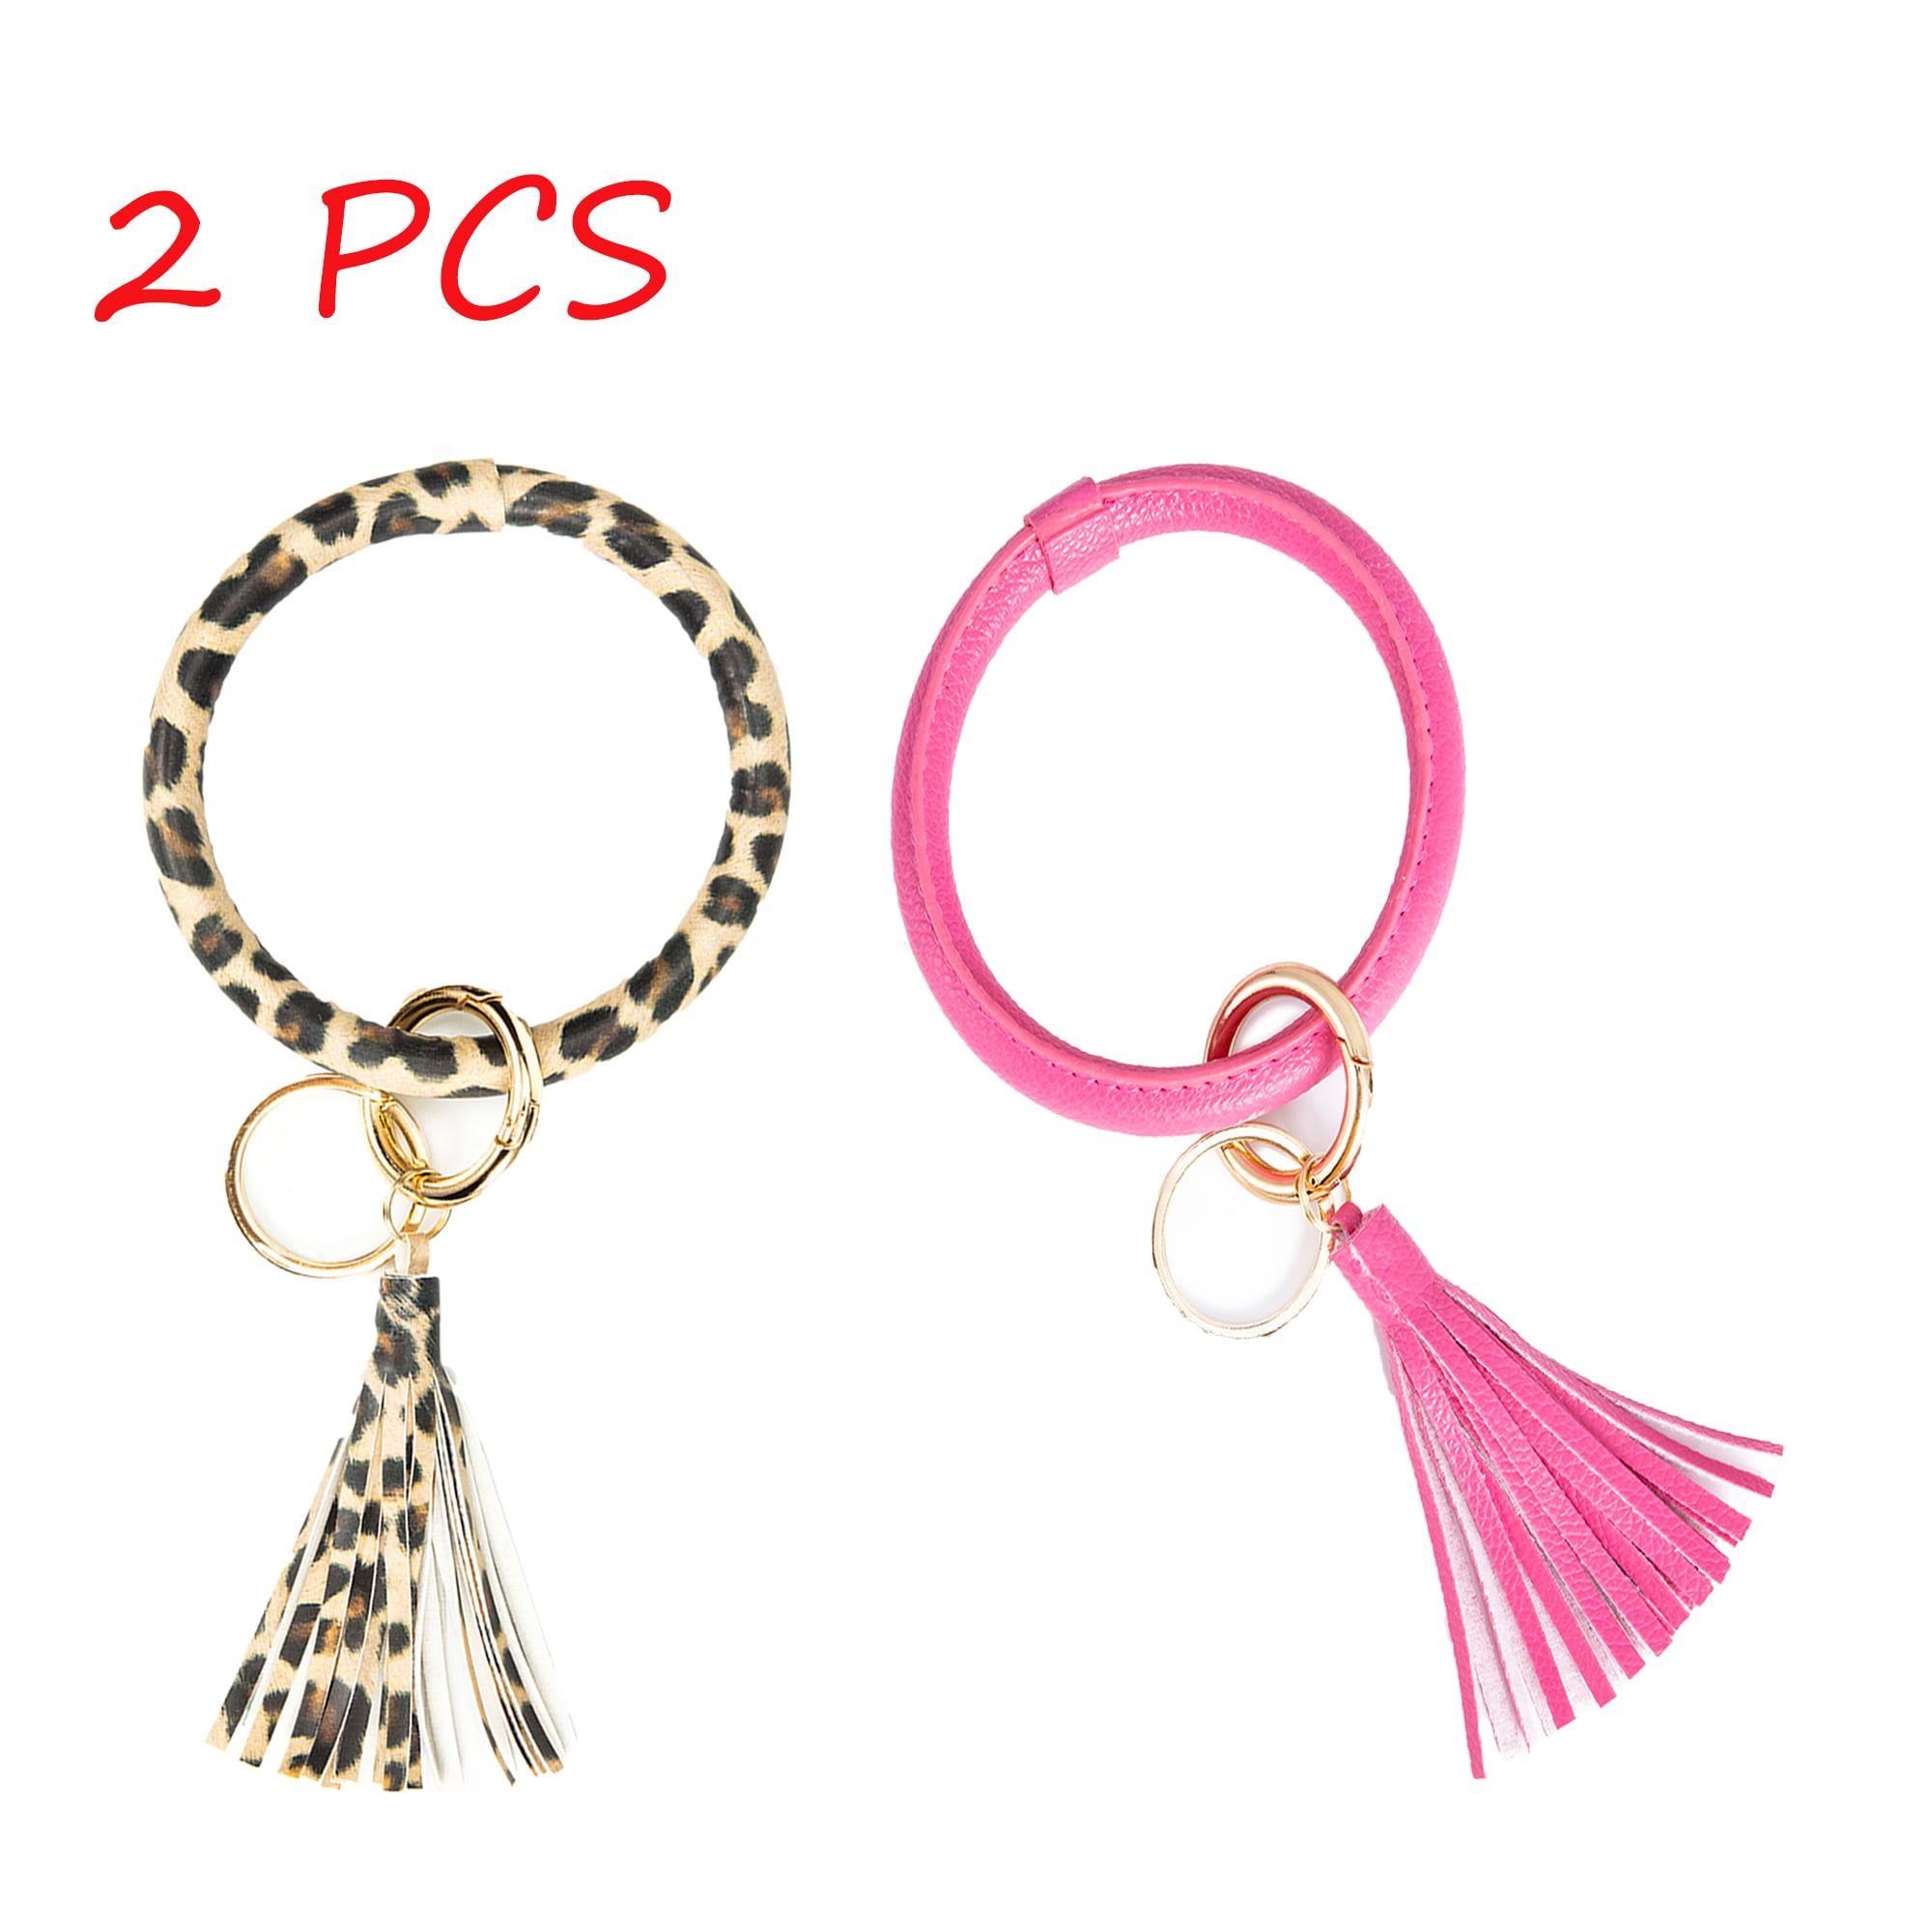 2pcs Women Girls Leather Round Key Ring Wristlet Keychain Bracelet Bangle 